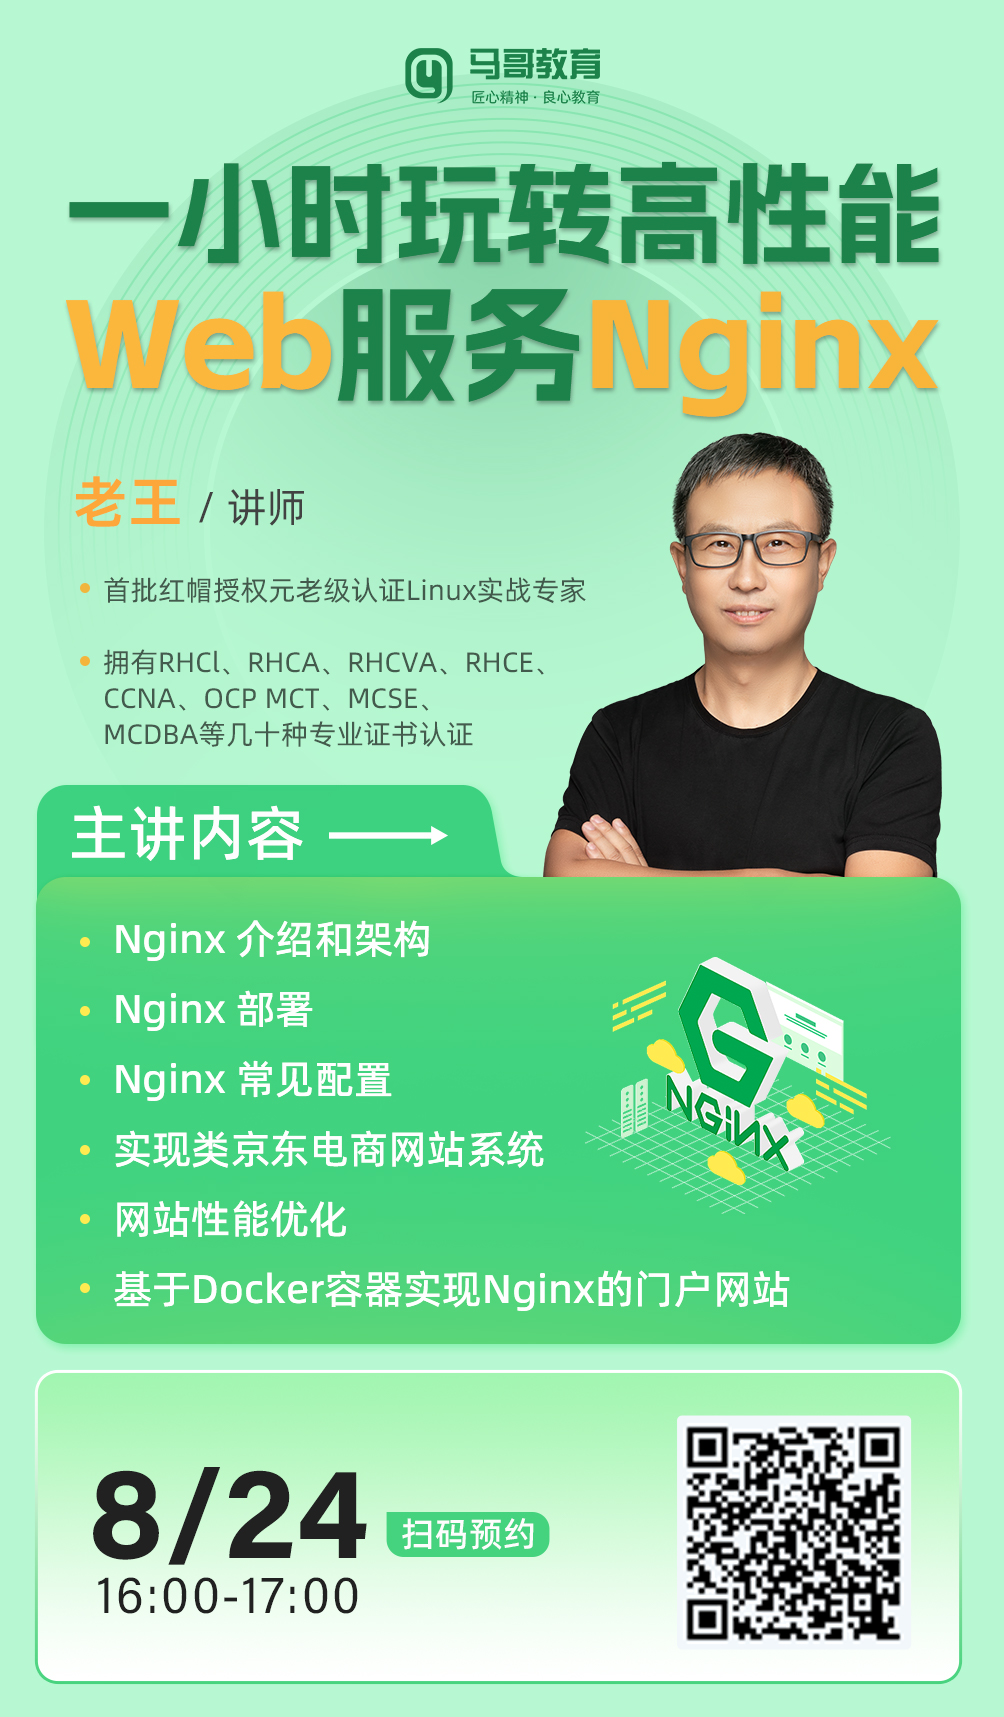 周四16:00，老王分享【一小时玩转高性能Web服务Nginx】，预约开启